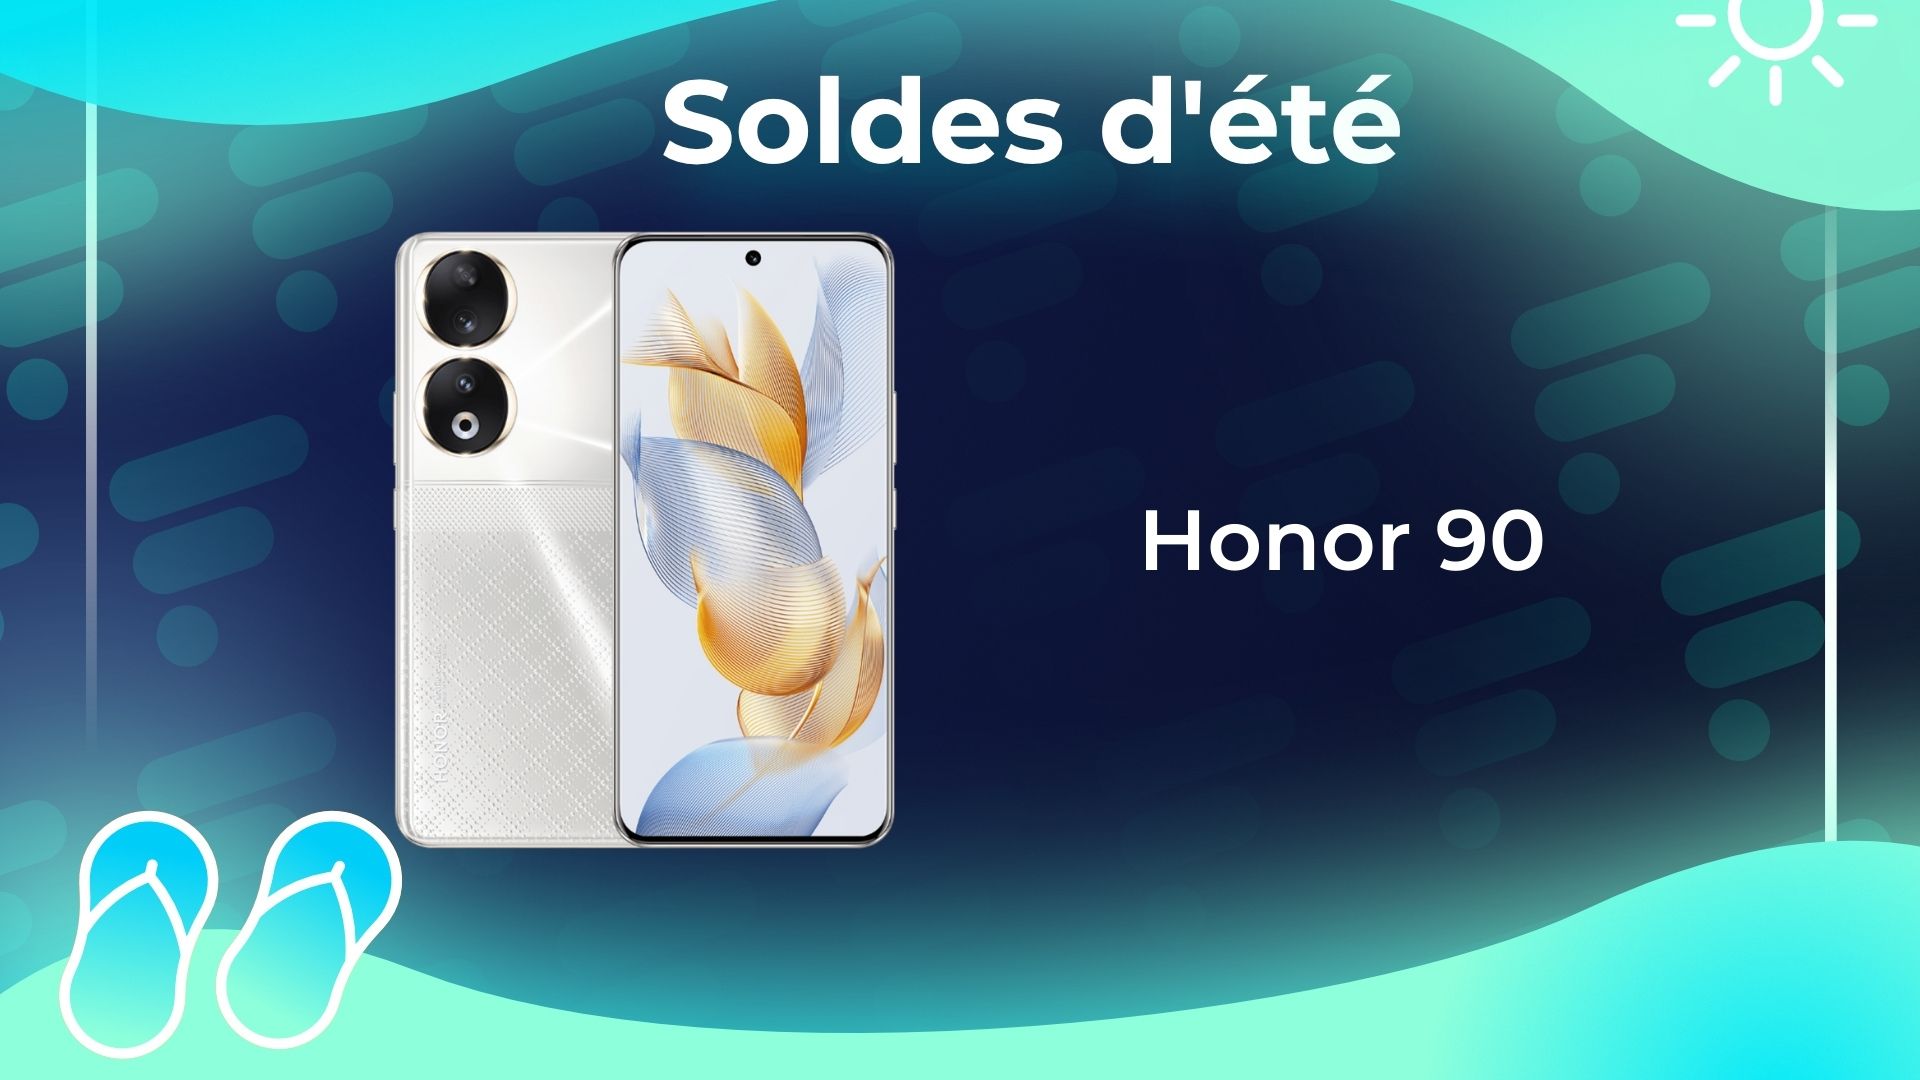 Le nouveau Honor 90 est arrivé et profite d'une belle offre de lancement  pendant les soldes